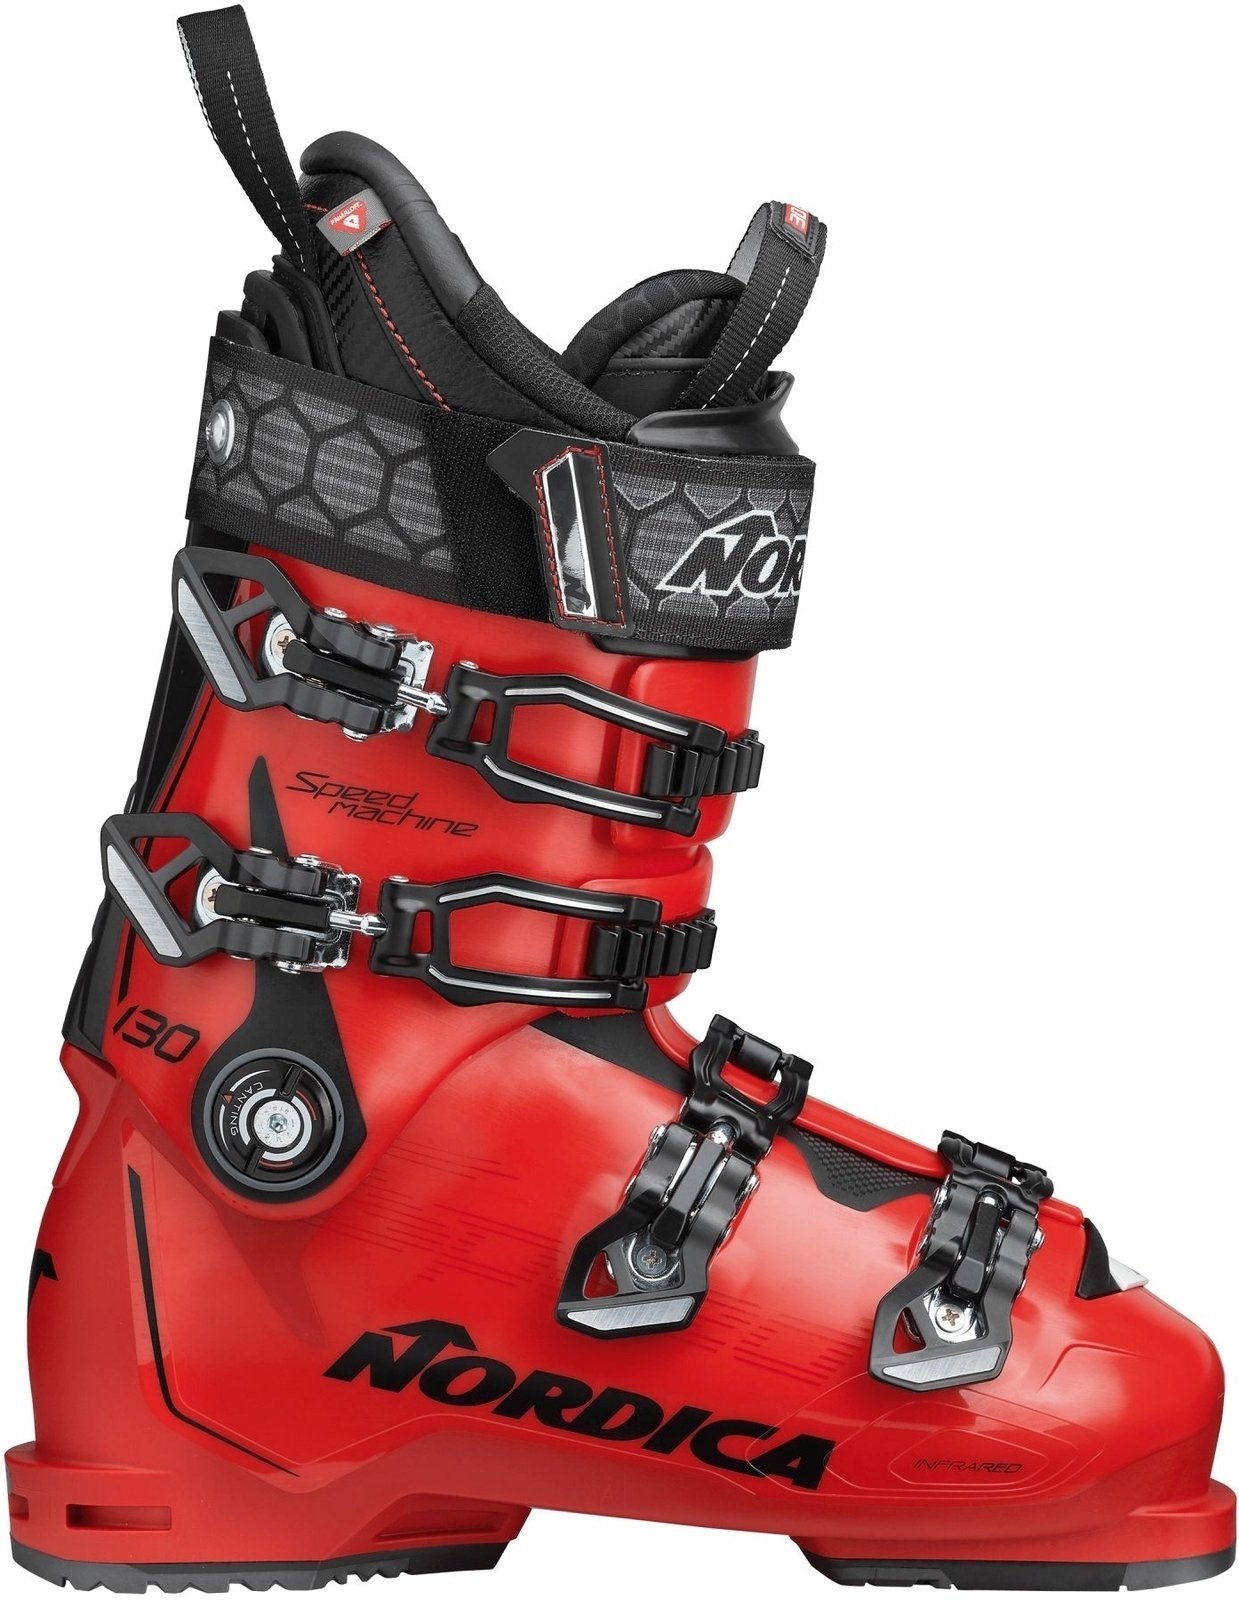 Alpineskischoenen Nordica Speedmachine Red-Zwart 290 Alpineskischoenen